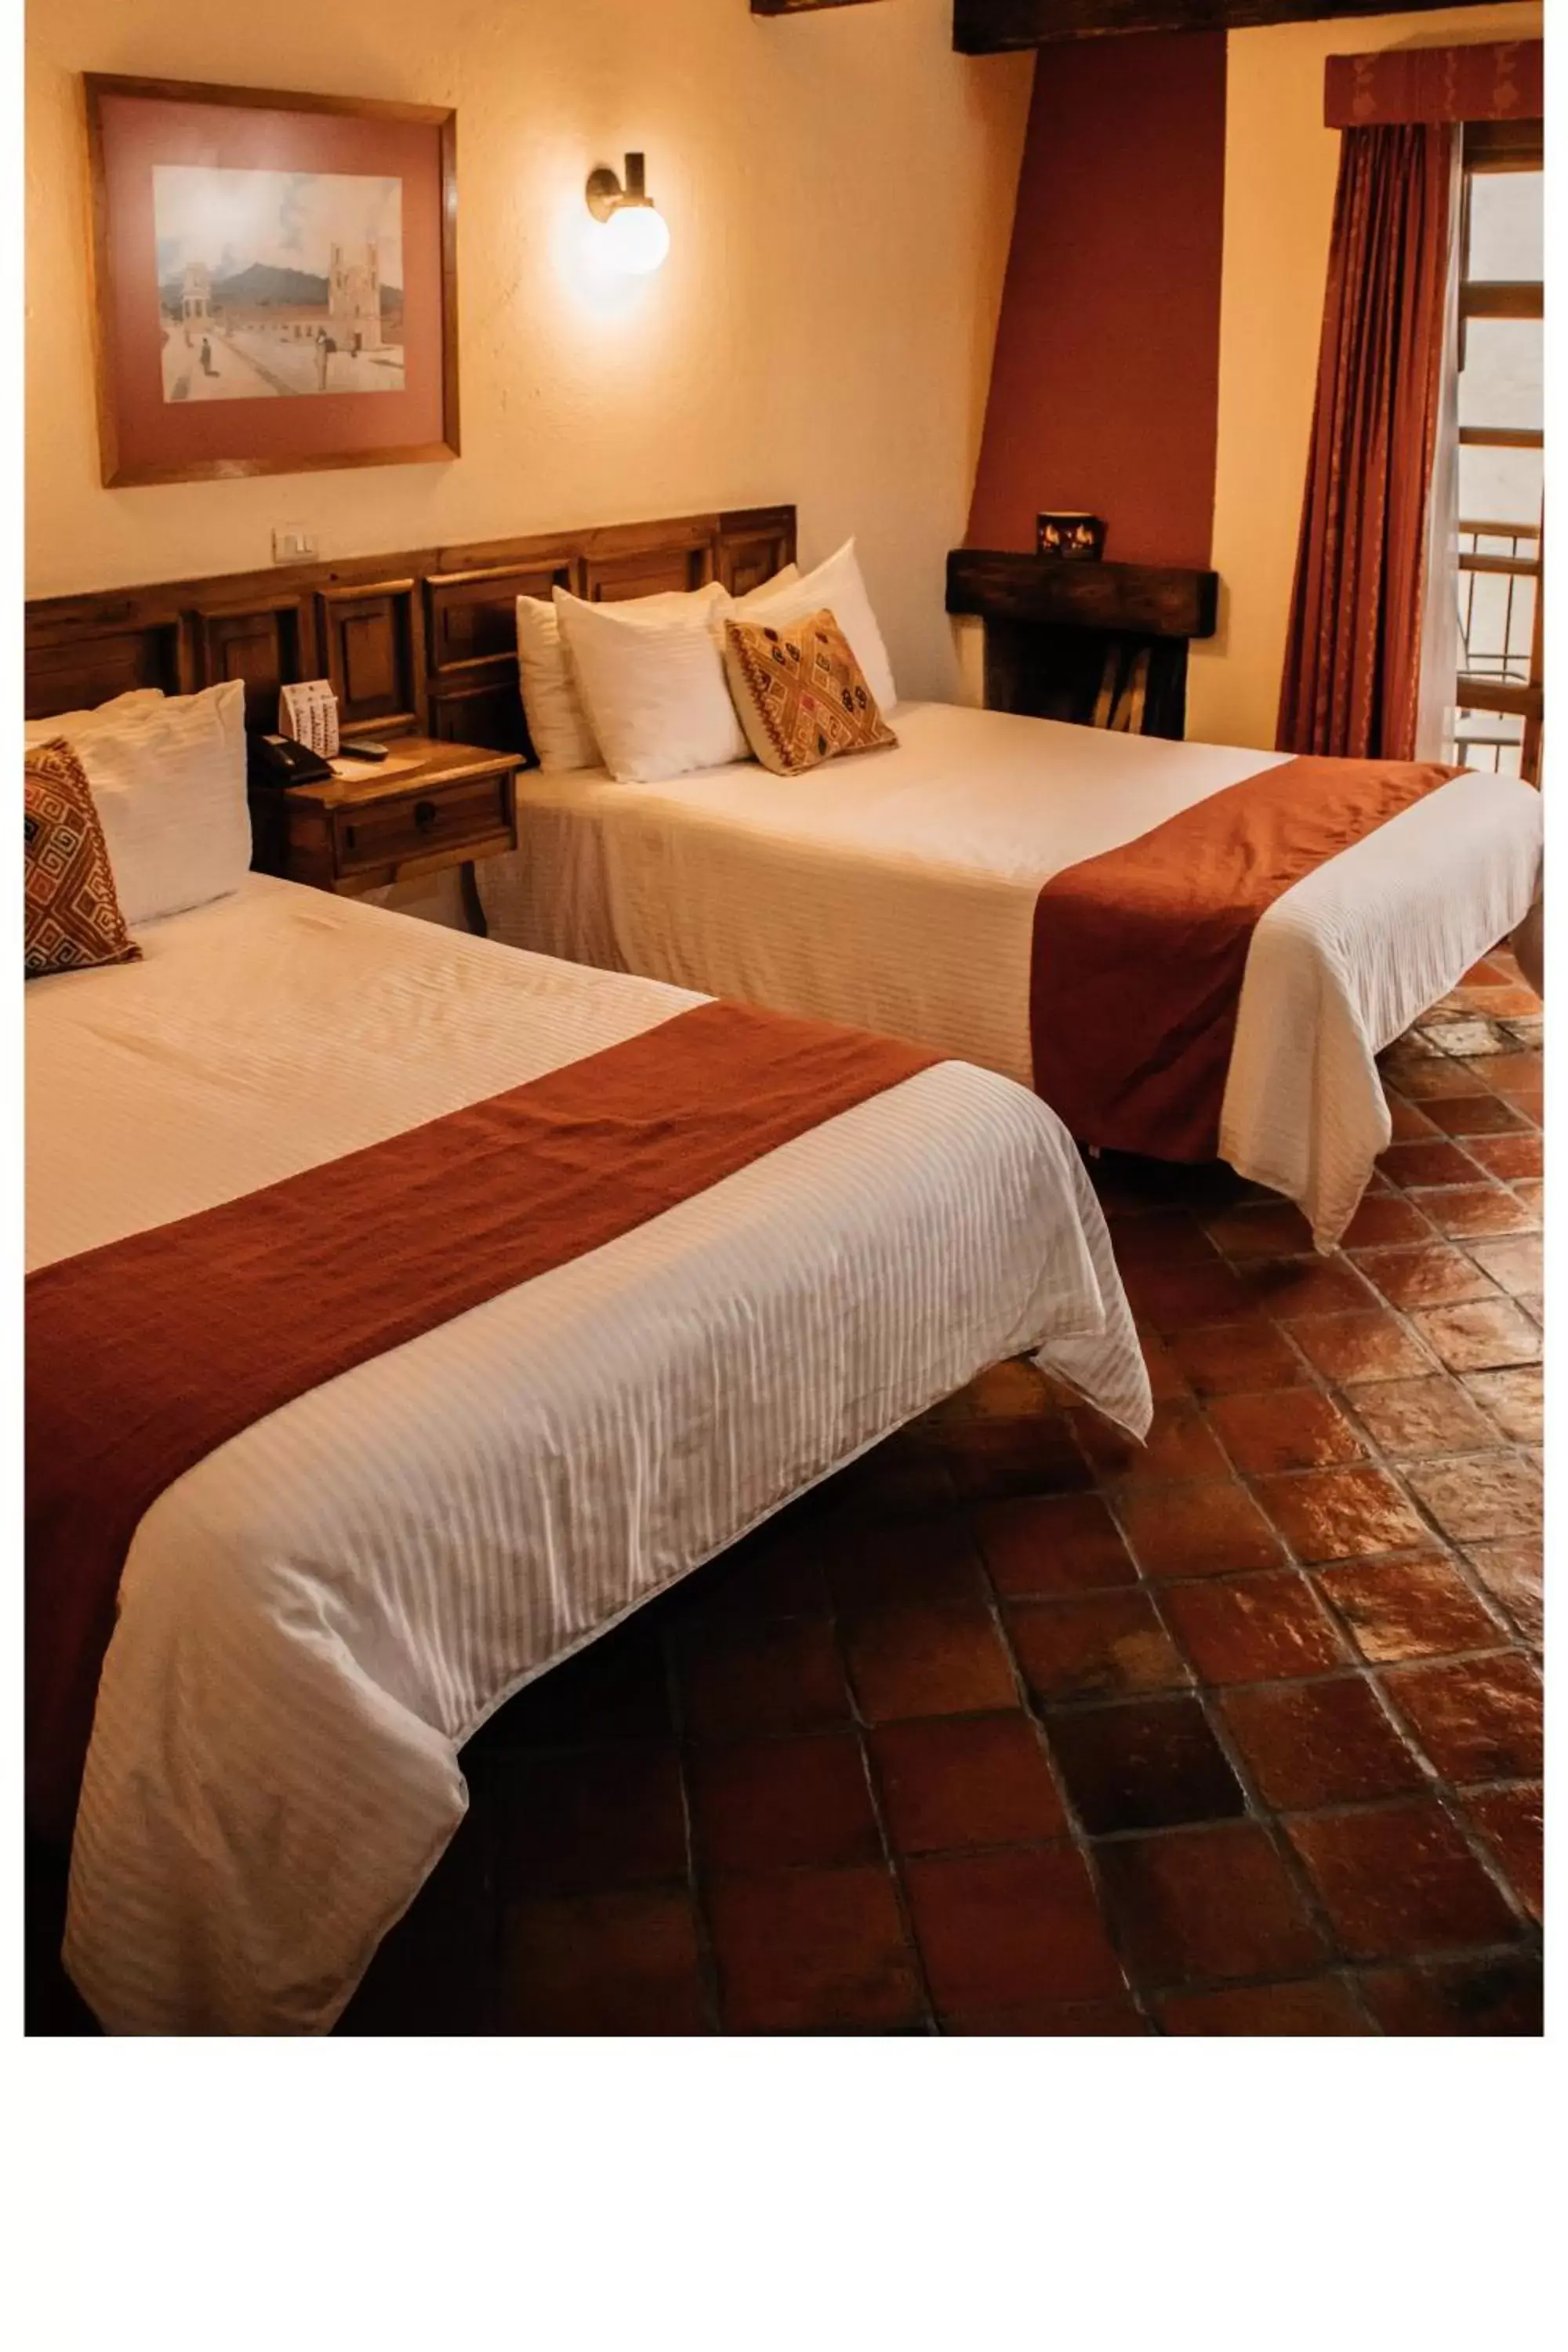 Bed in Hotel Diego de Mazariegos